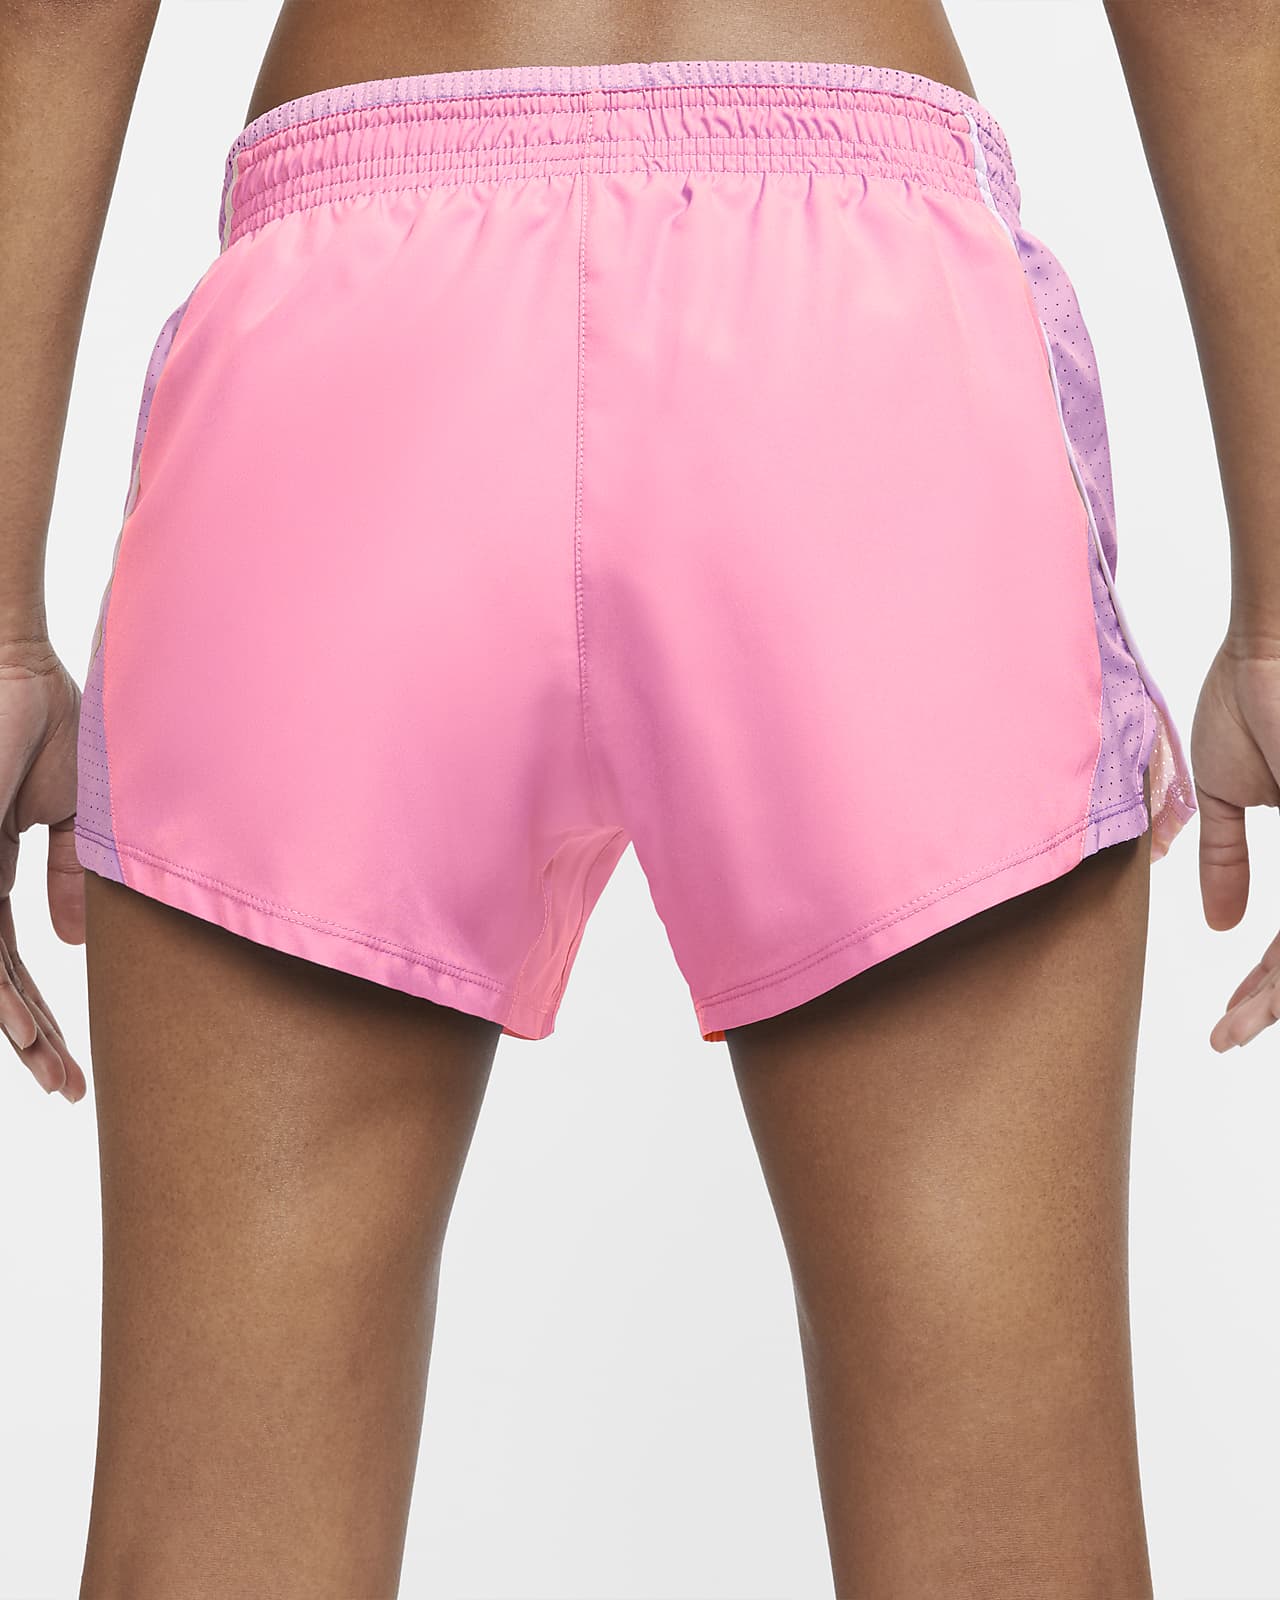 nike running 10k shorts pink